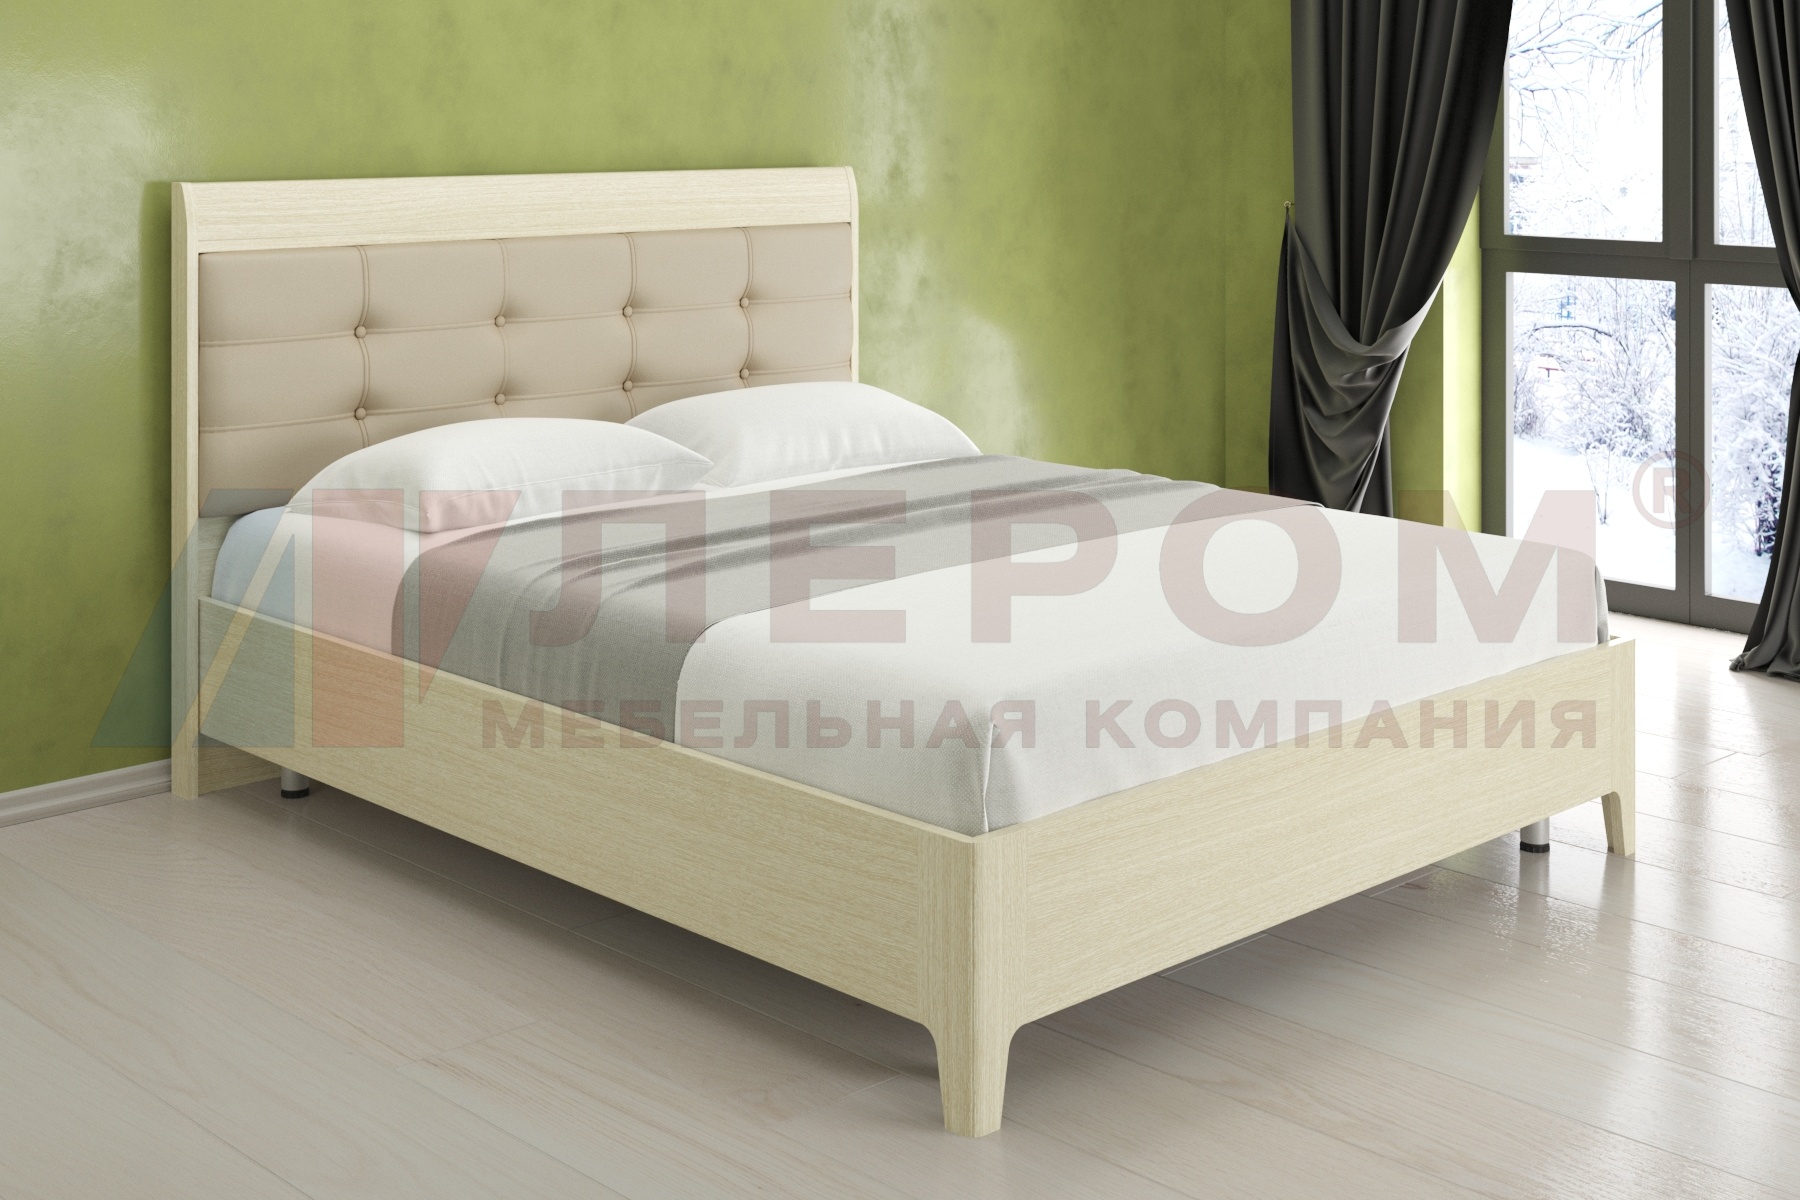 КР-2073 кровать (1,6*2,0)